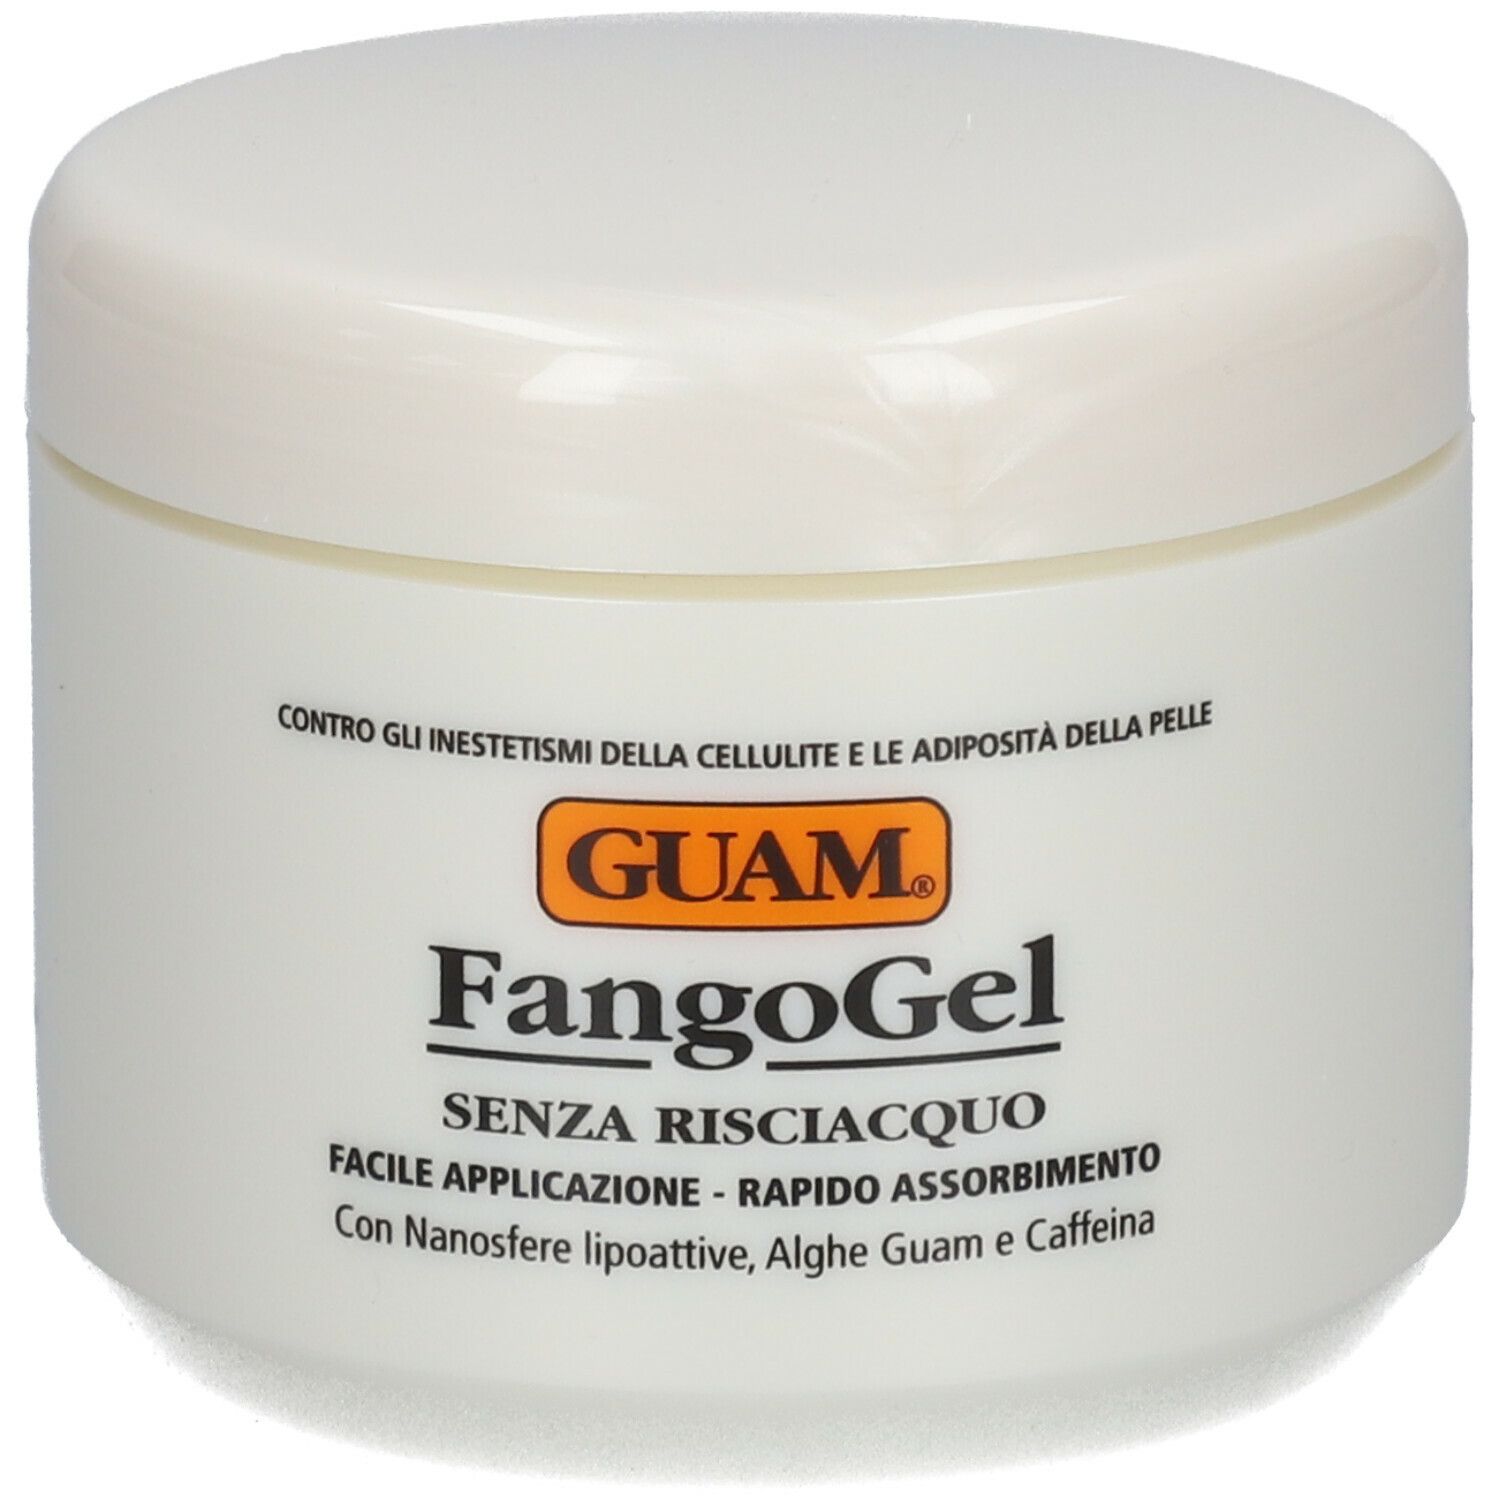 GUAM® Fangogel Anticellulite Senza Risciacquo